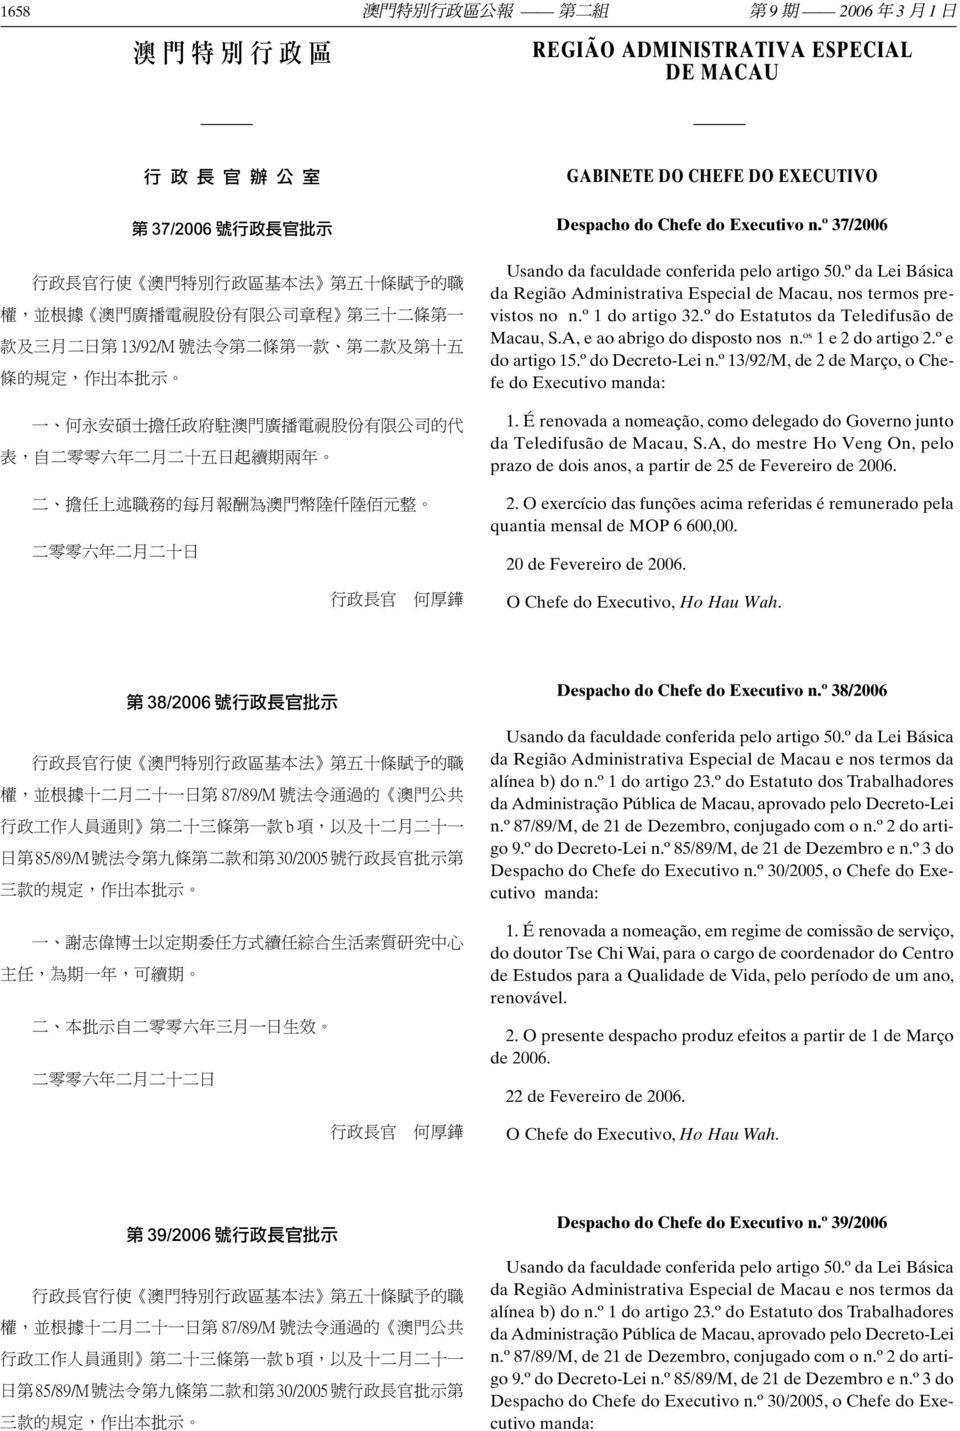 º 37/2006 Usando da faculdade conferida pelo artigo 50.º da Lei Básica da Região Administrativa Especial de Macau, nos termos previstos no n.º 1 do artigo 32.º do Estatutos da Teledifusão de Macau, S.